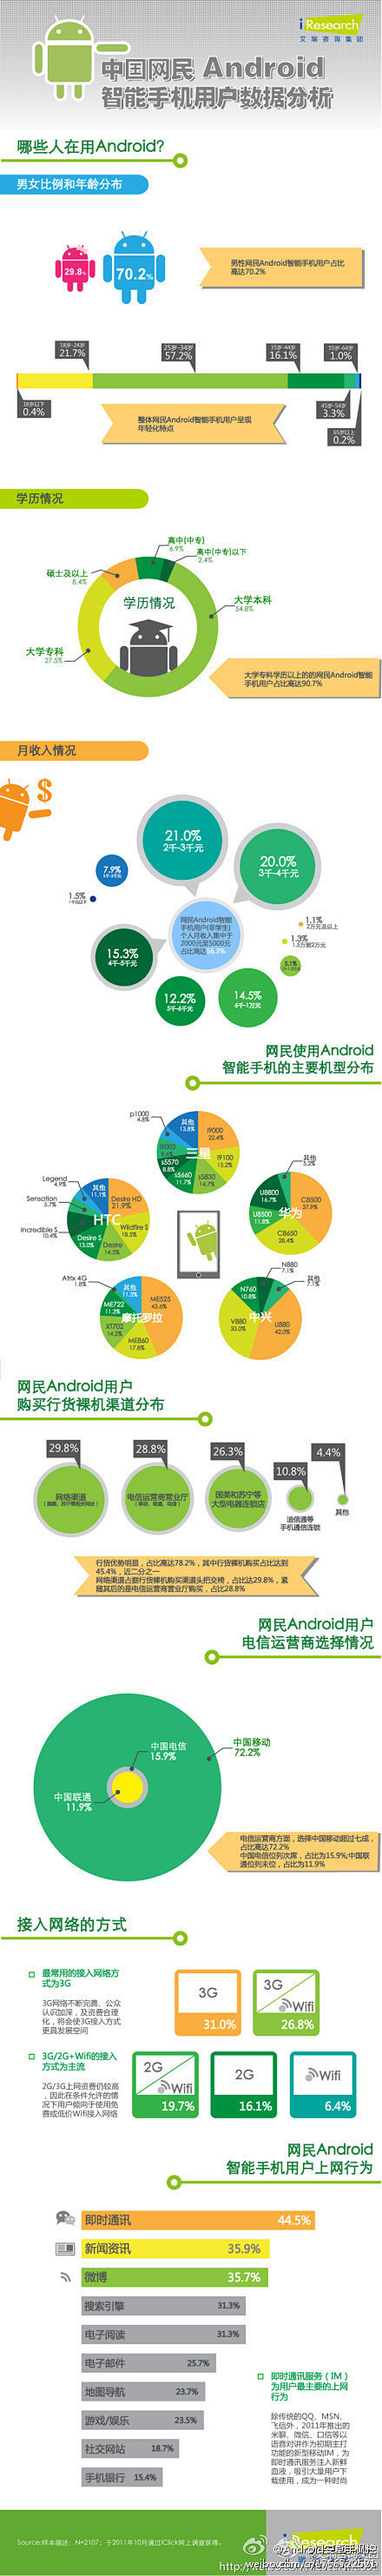 中国网民Android智能手机用户数据分...